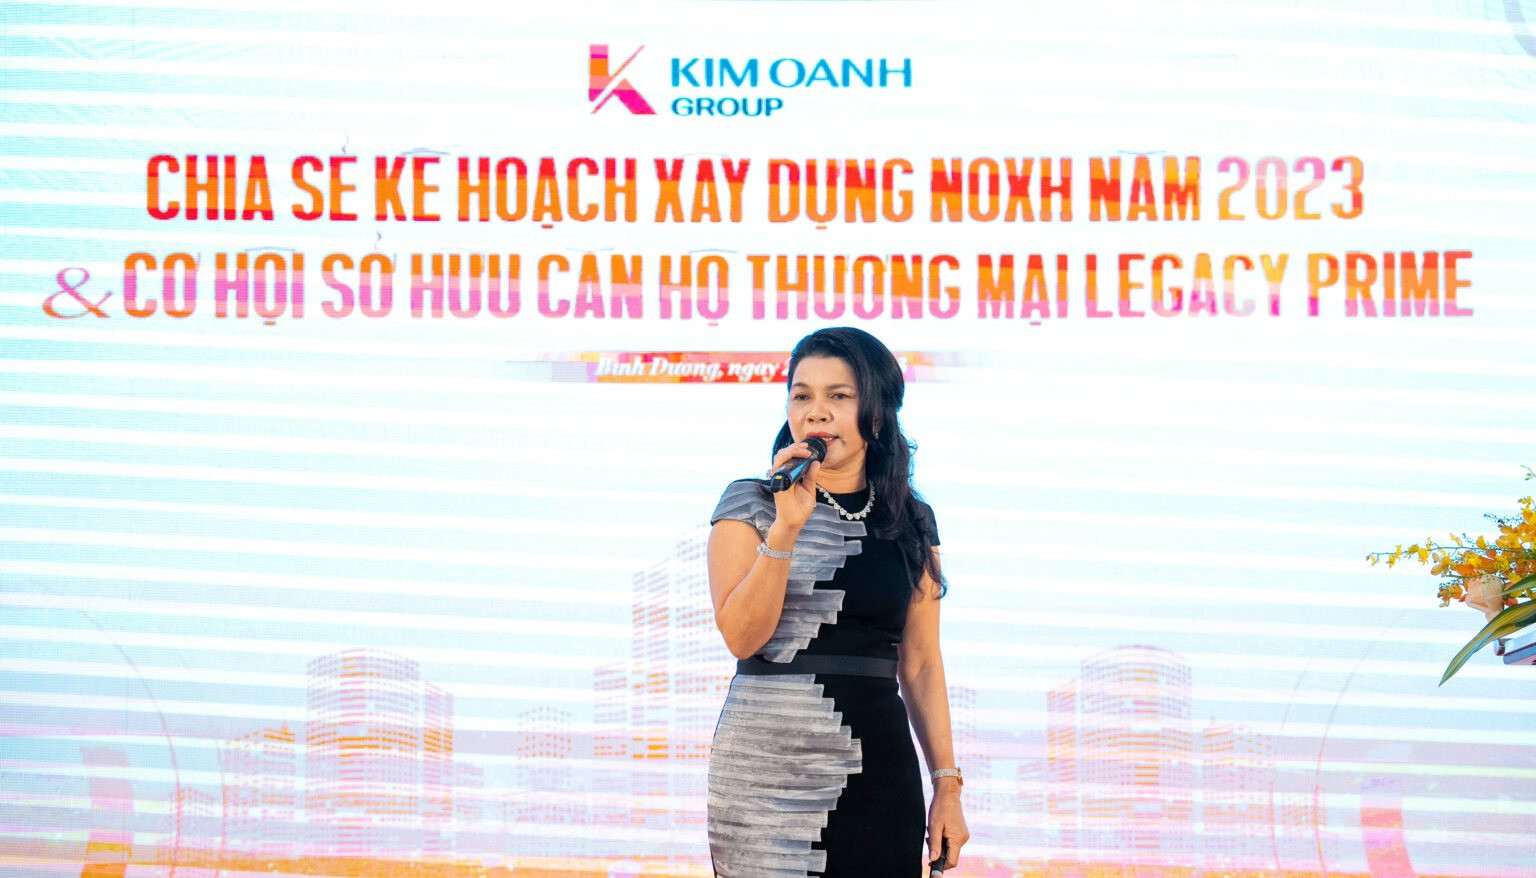 Tiềm lực công ty của “bà trùm” bất động sản Kim Oanh khi muốn chi 31.000 tỷ đồng làm 40.000 căn NOXH - Ảnh 1.